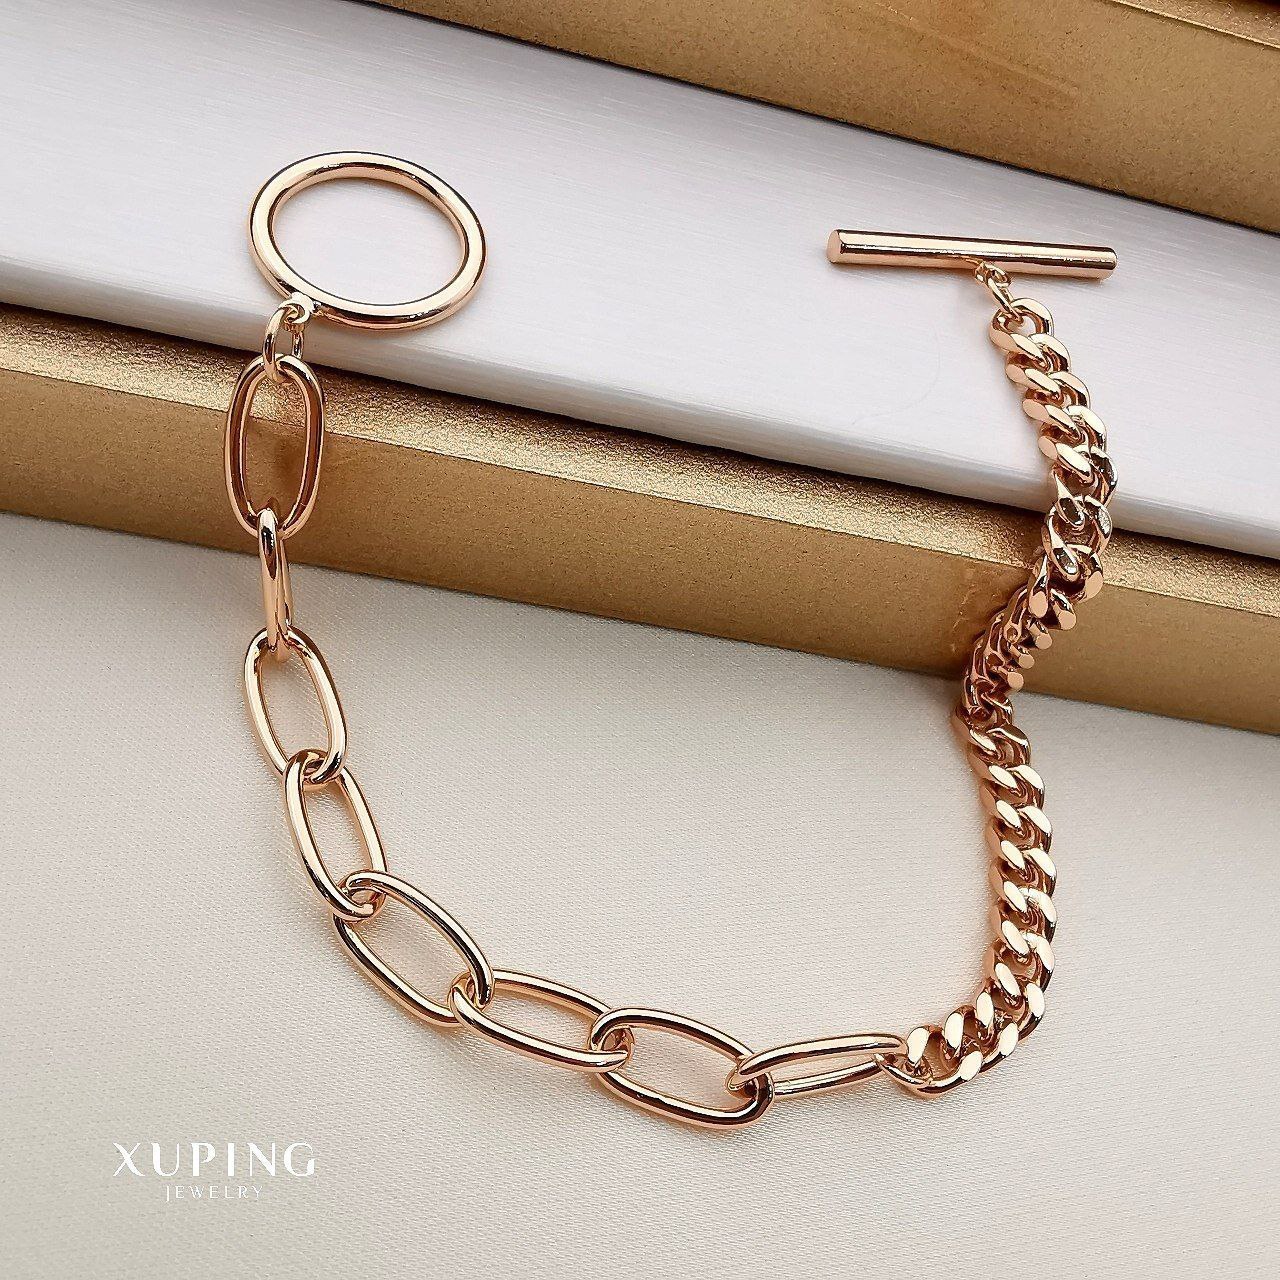 دستبند زنانه ژوپینگ مدل کارتیر و زنجیر کد B1161